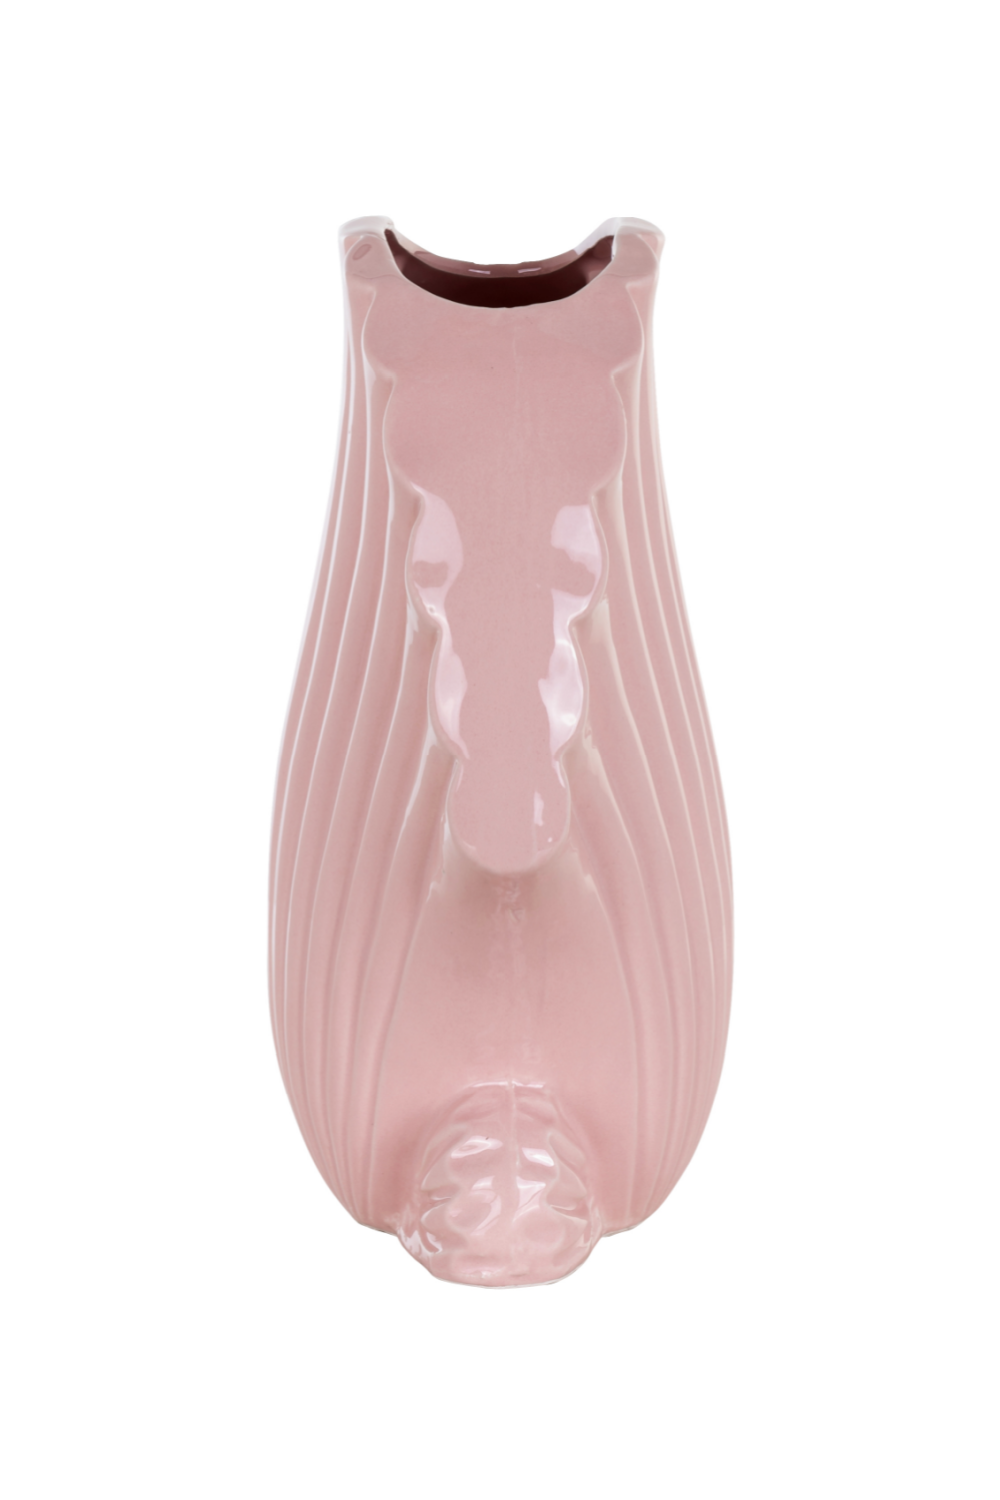 Ceramic Seashell Vase | OROA Shelby | OROA.com